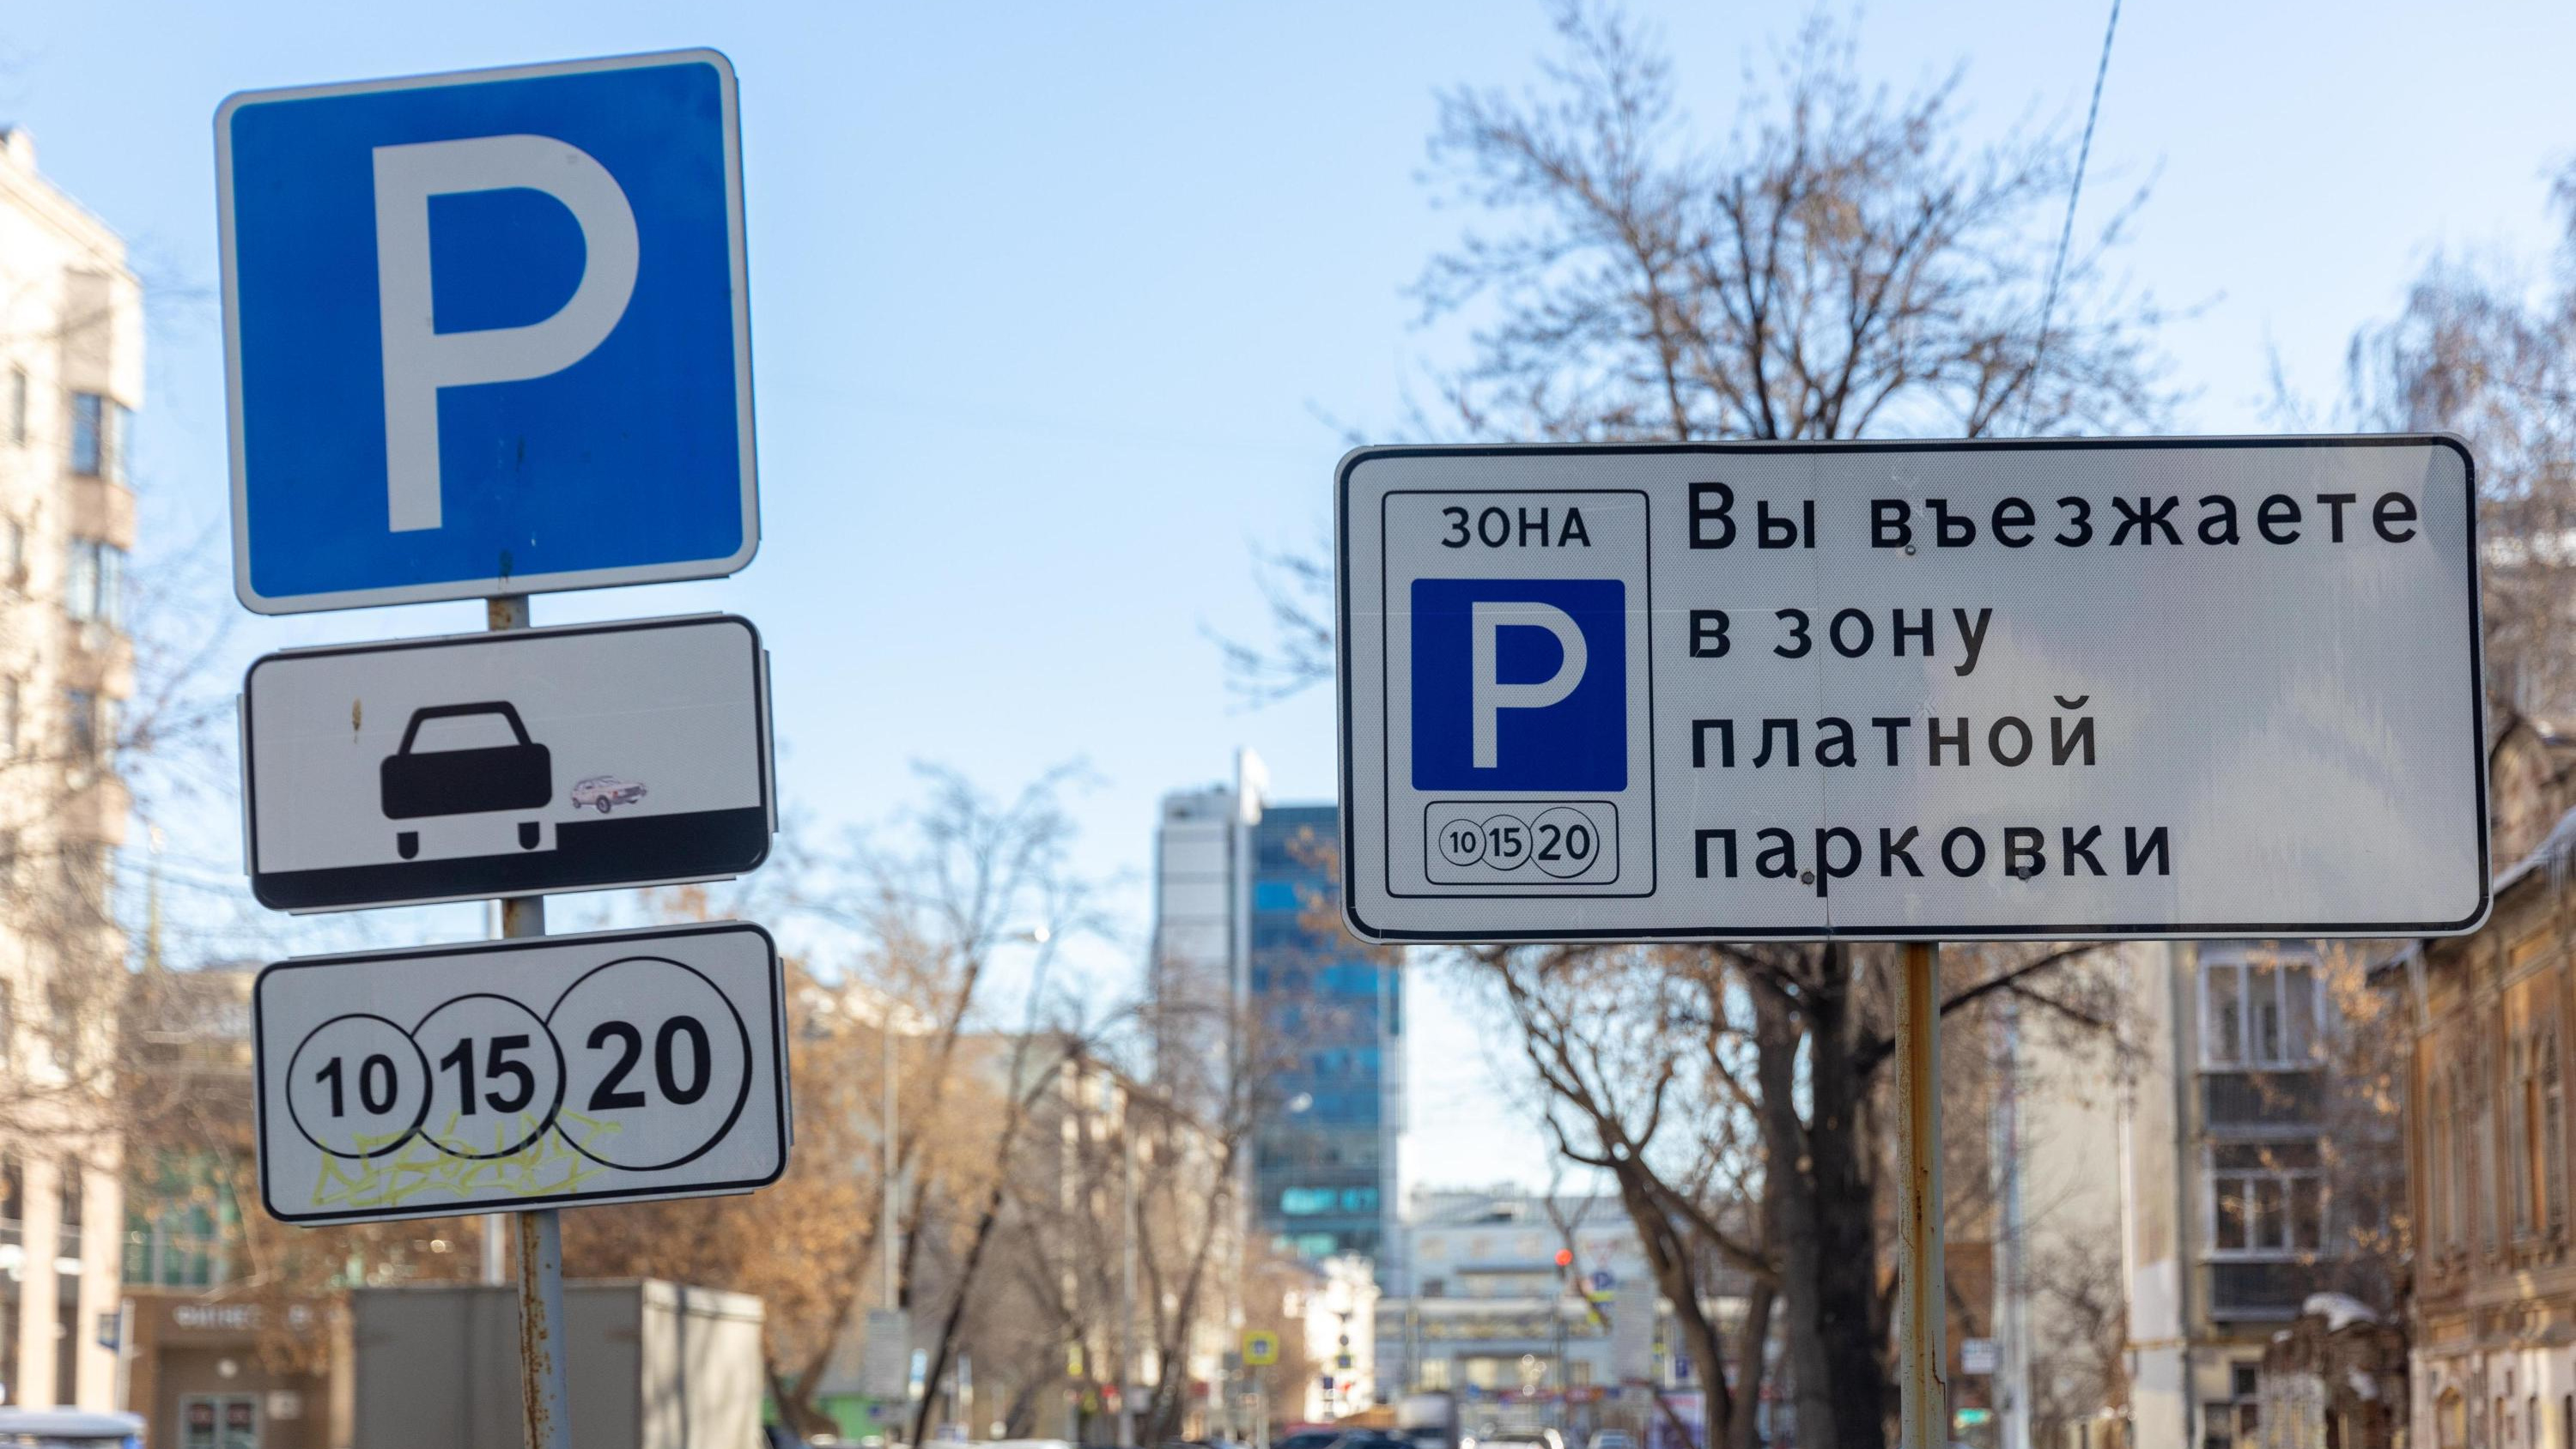 В Ижевске ликвидируют часть платных парковок и сделают новые